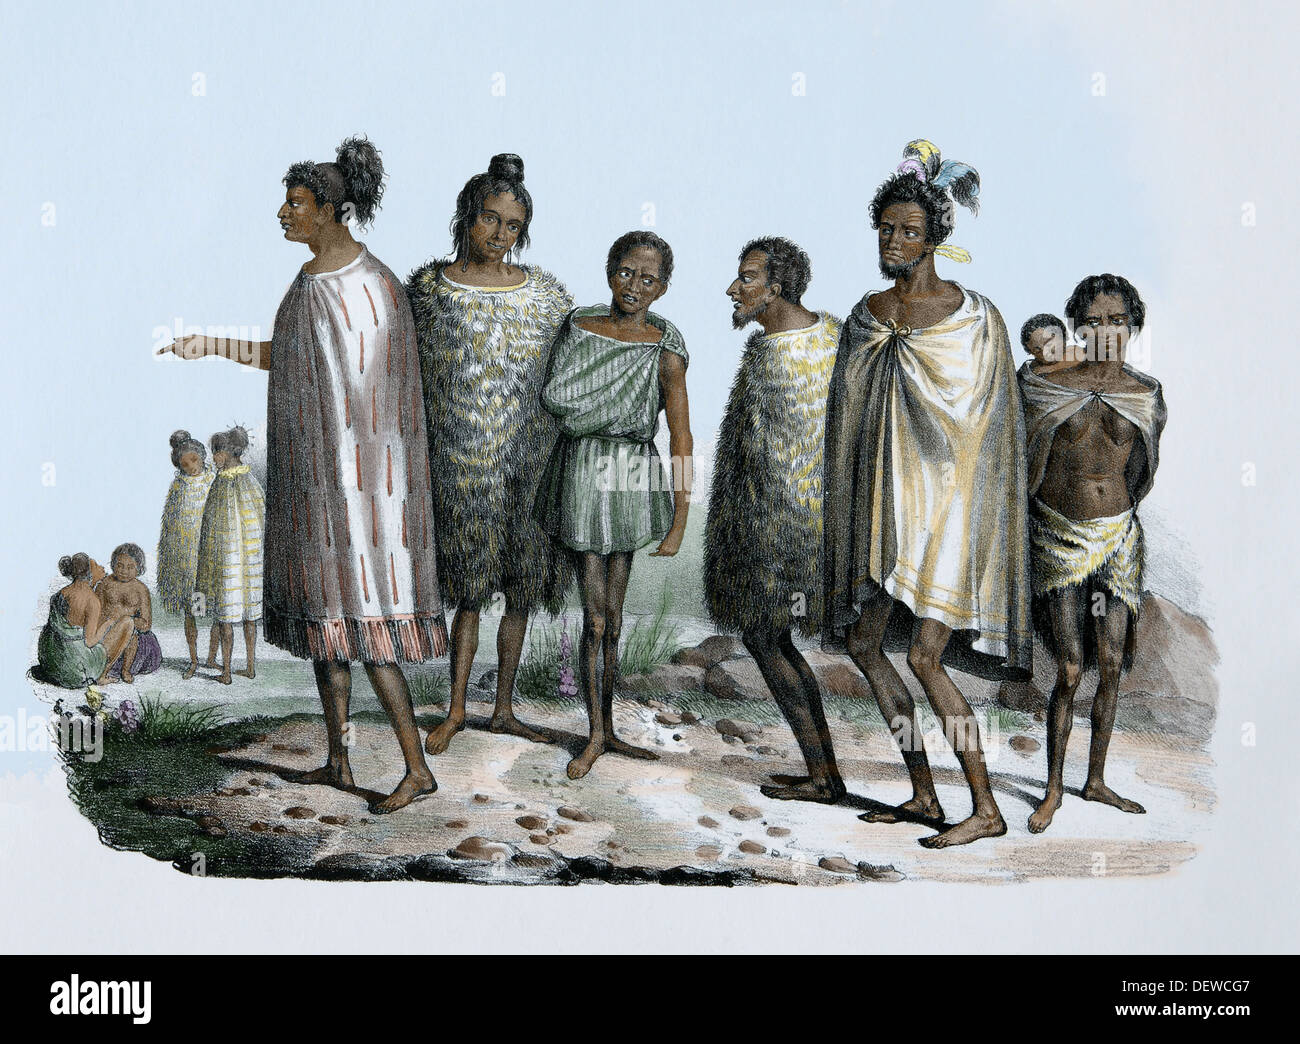 Isole del Pacifico. Neozelandesi, c. 1840. Indigeni popolo polinesiano. Cultura Maori. Incisione colorata. Xix secolo. Foto Stock